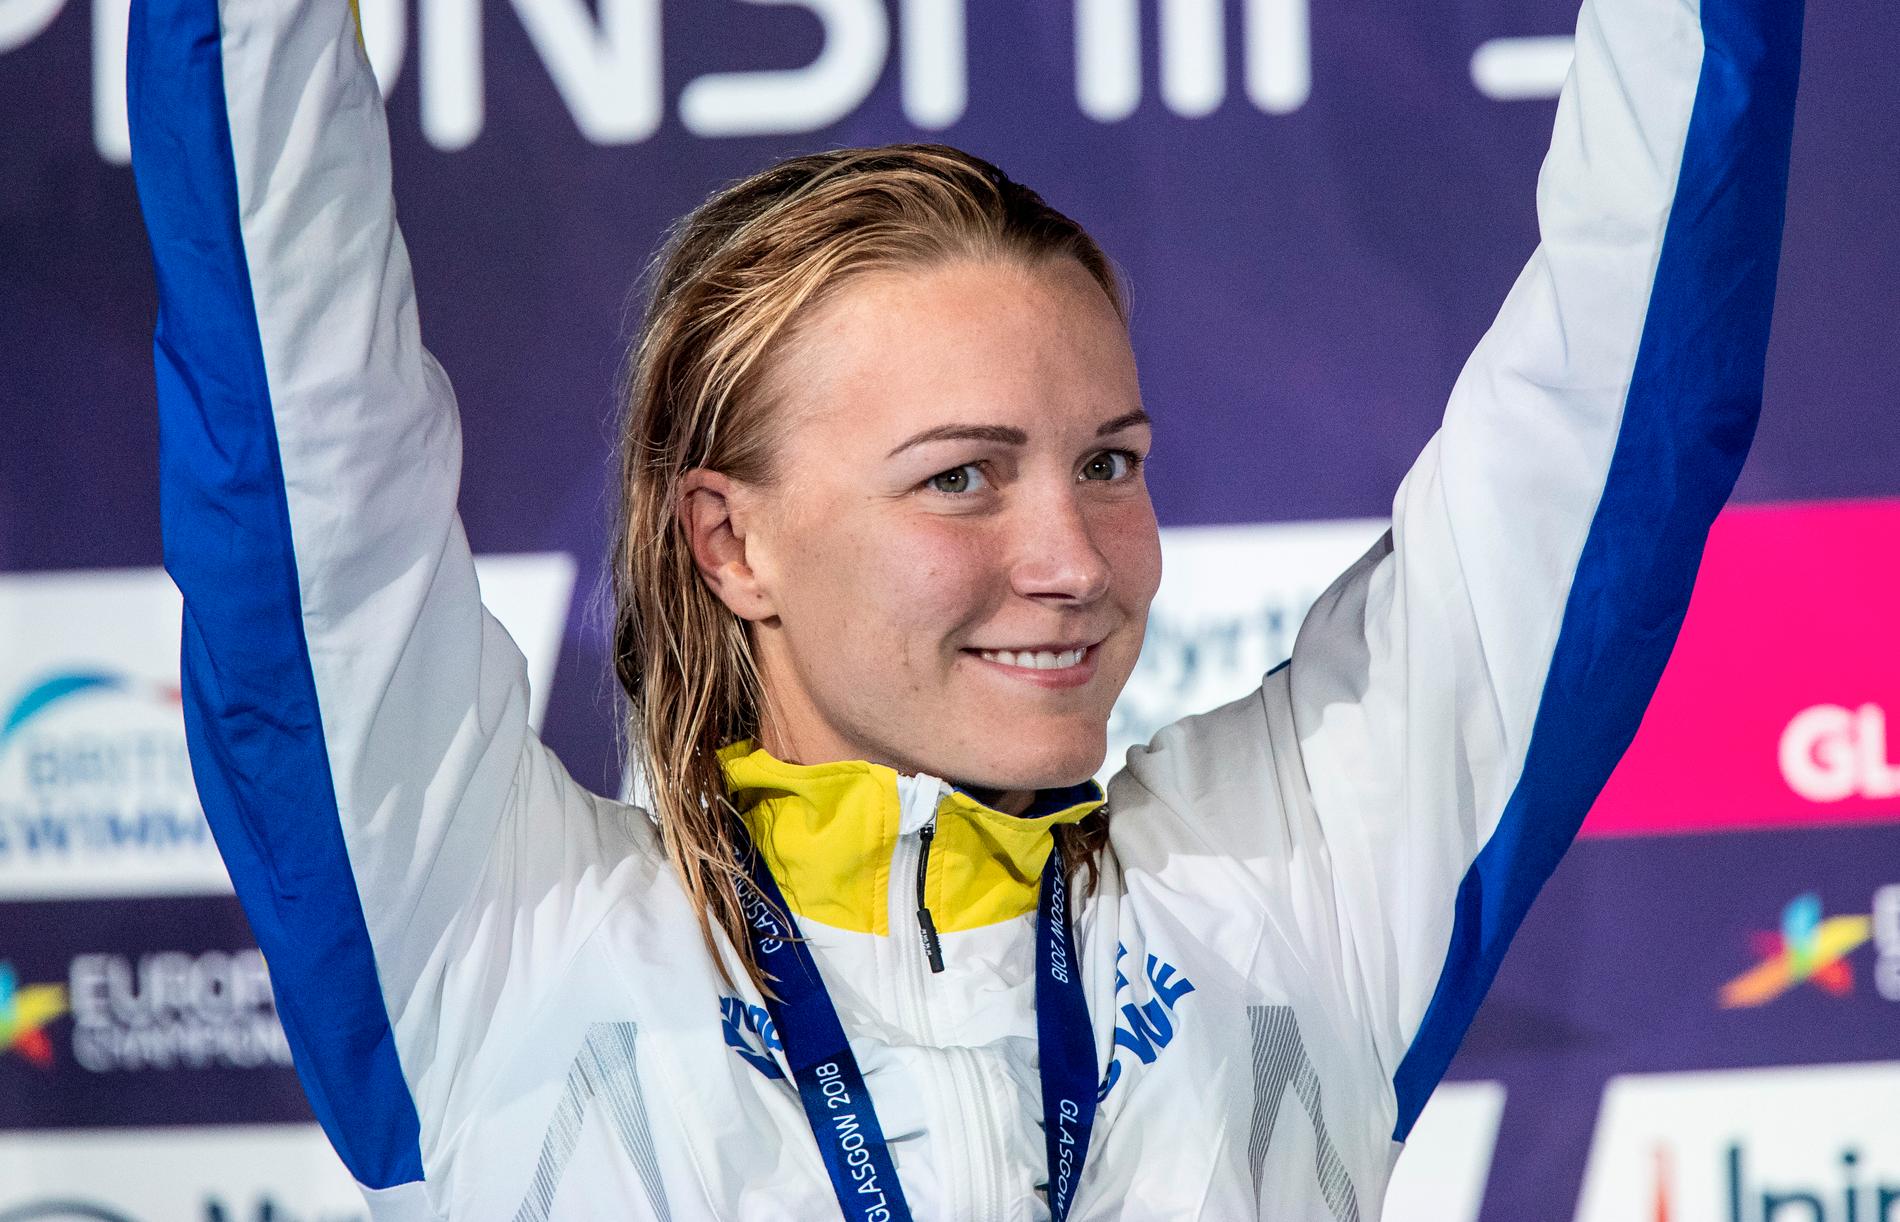 Förutom regerande mästare i världscupen har Sjöström fyra färska EM-guld i bagaget.